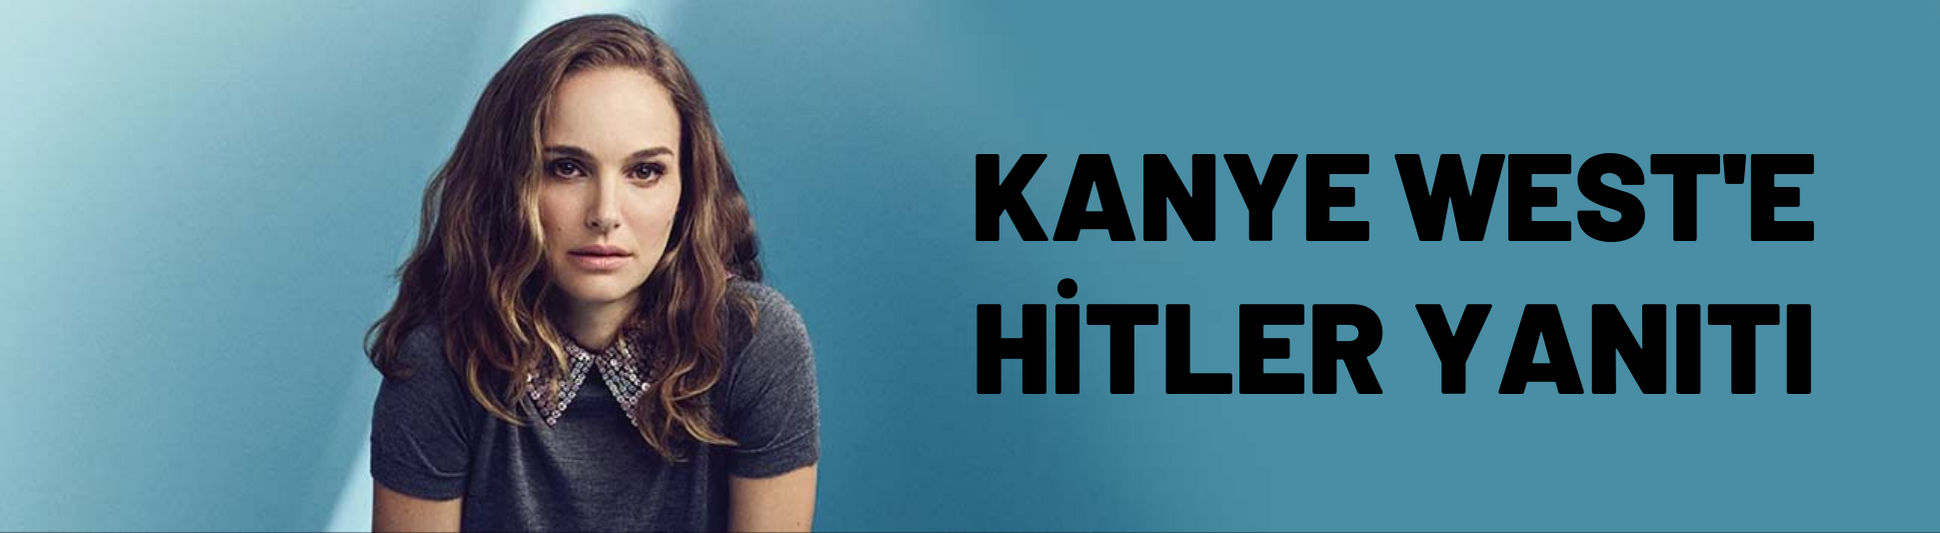 Natalie Portman'dan Kanye West'e Hitler yanıtı